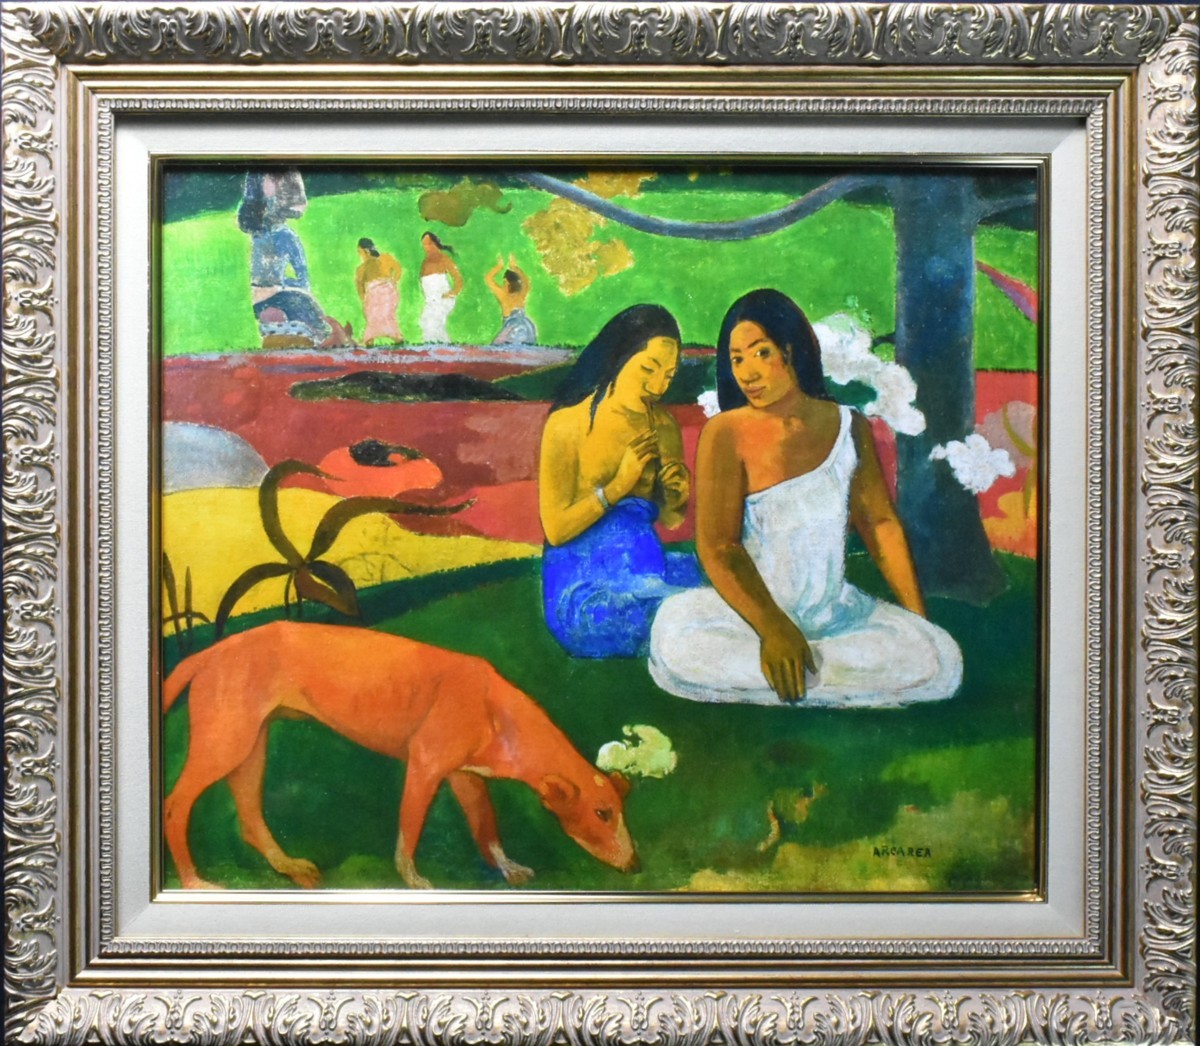 Reproducción del pintor postimpresionista francés Gauguin Alearea 8F 1/100 Seiko Gallery, obra de arte, imprimir, otros